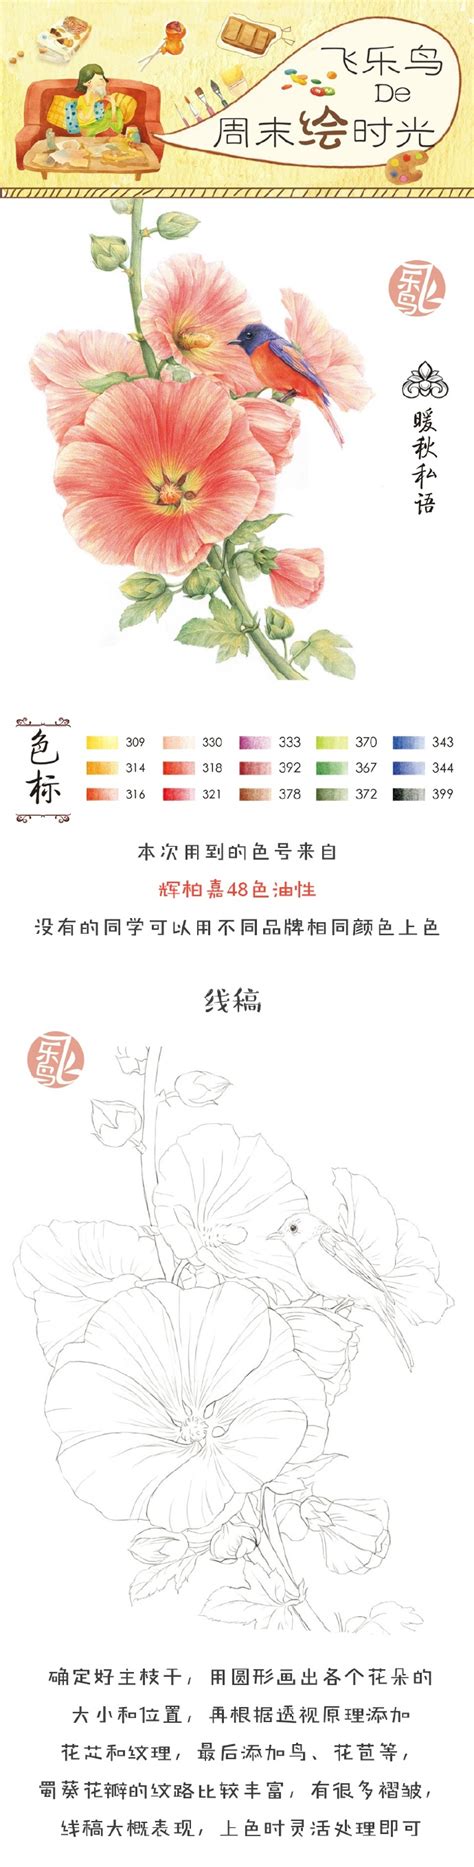 资料下载：飞乐鸟的色铅笔手绘世界.pdf